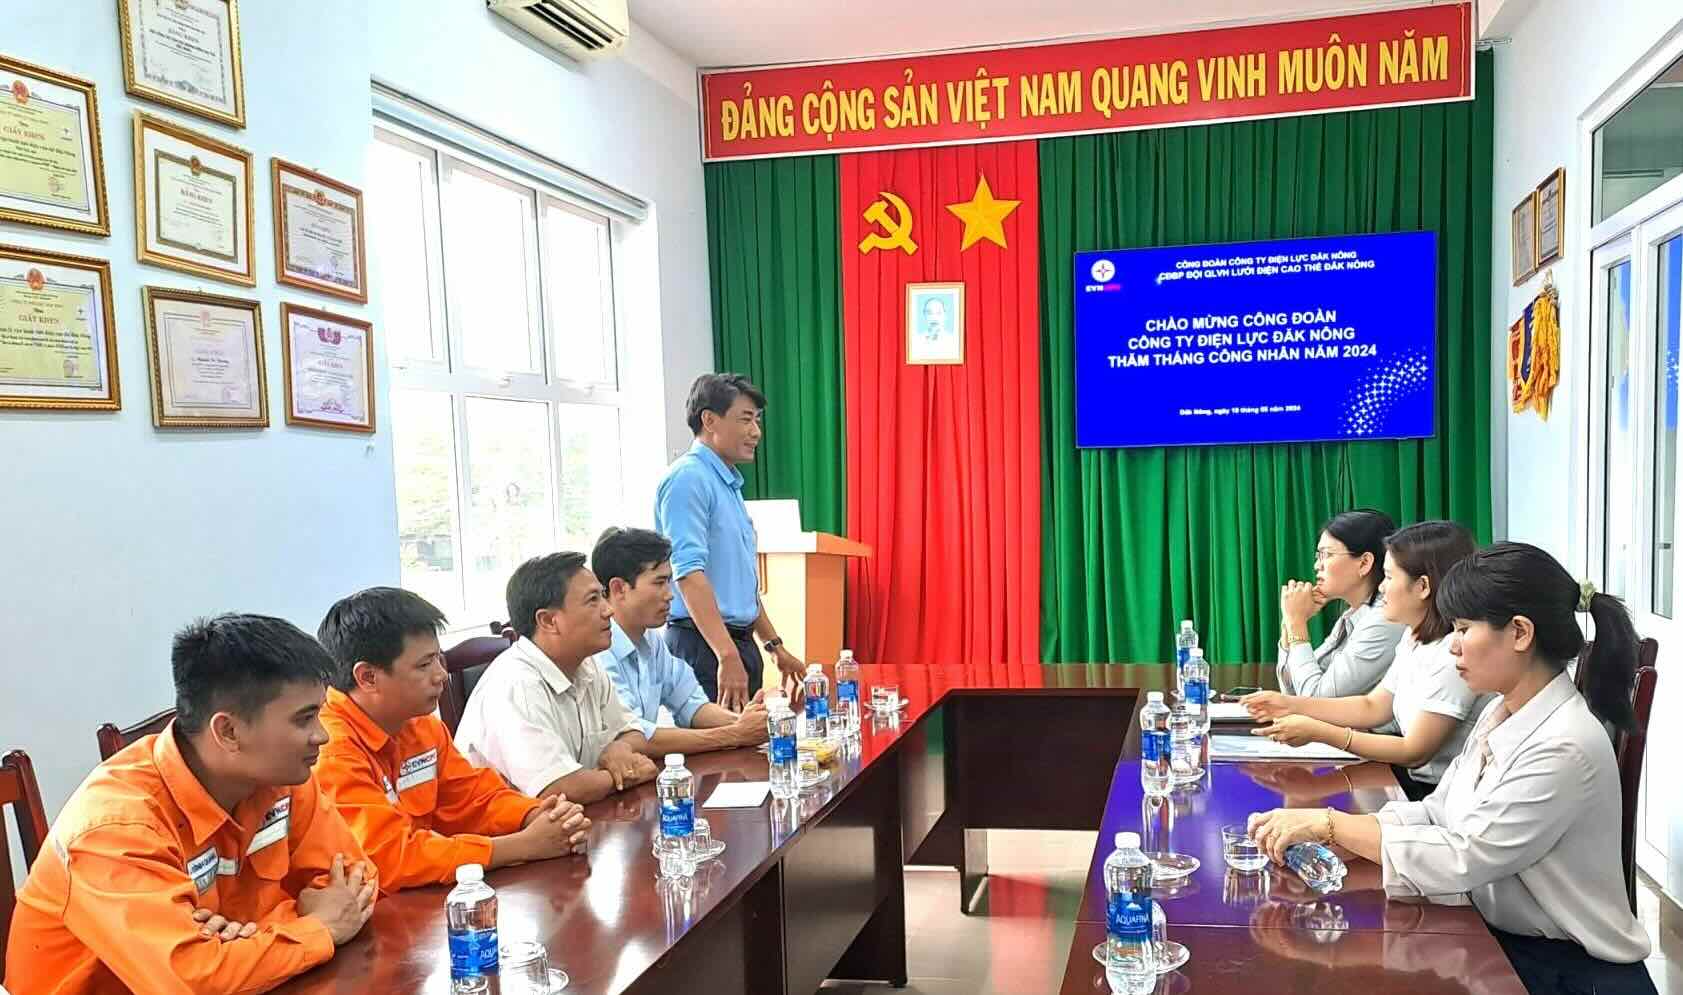 Công đoàn PC Đắk Nông gặp mặt người lao động tại Đội QLVHLĐ Cao thế Đắk Nông. ẢNH: PV